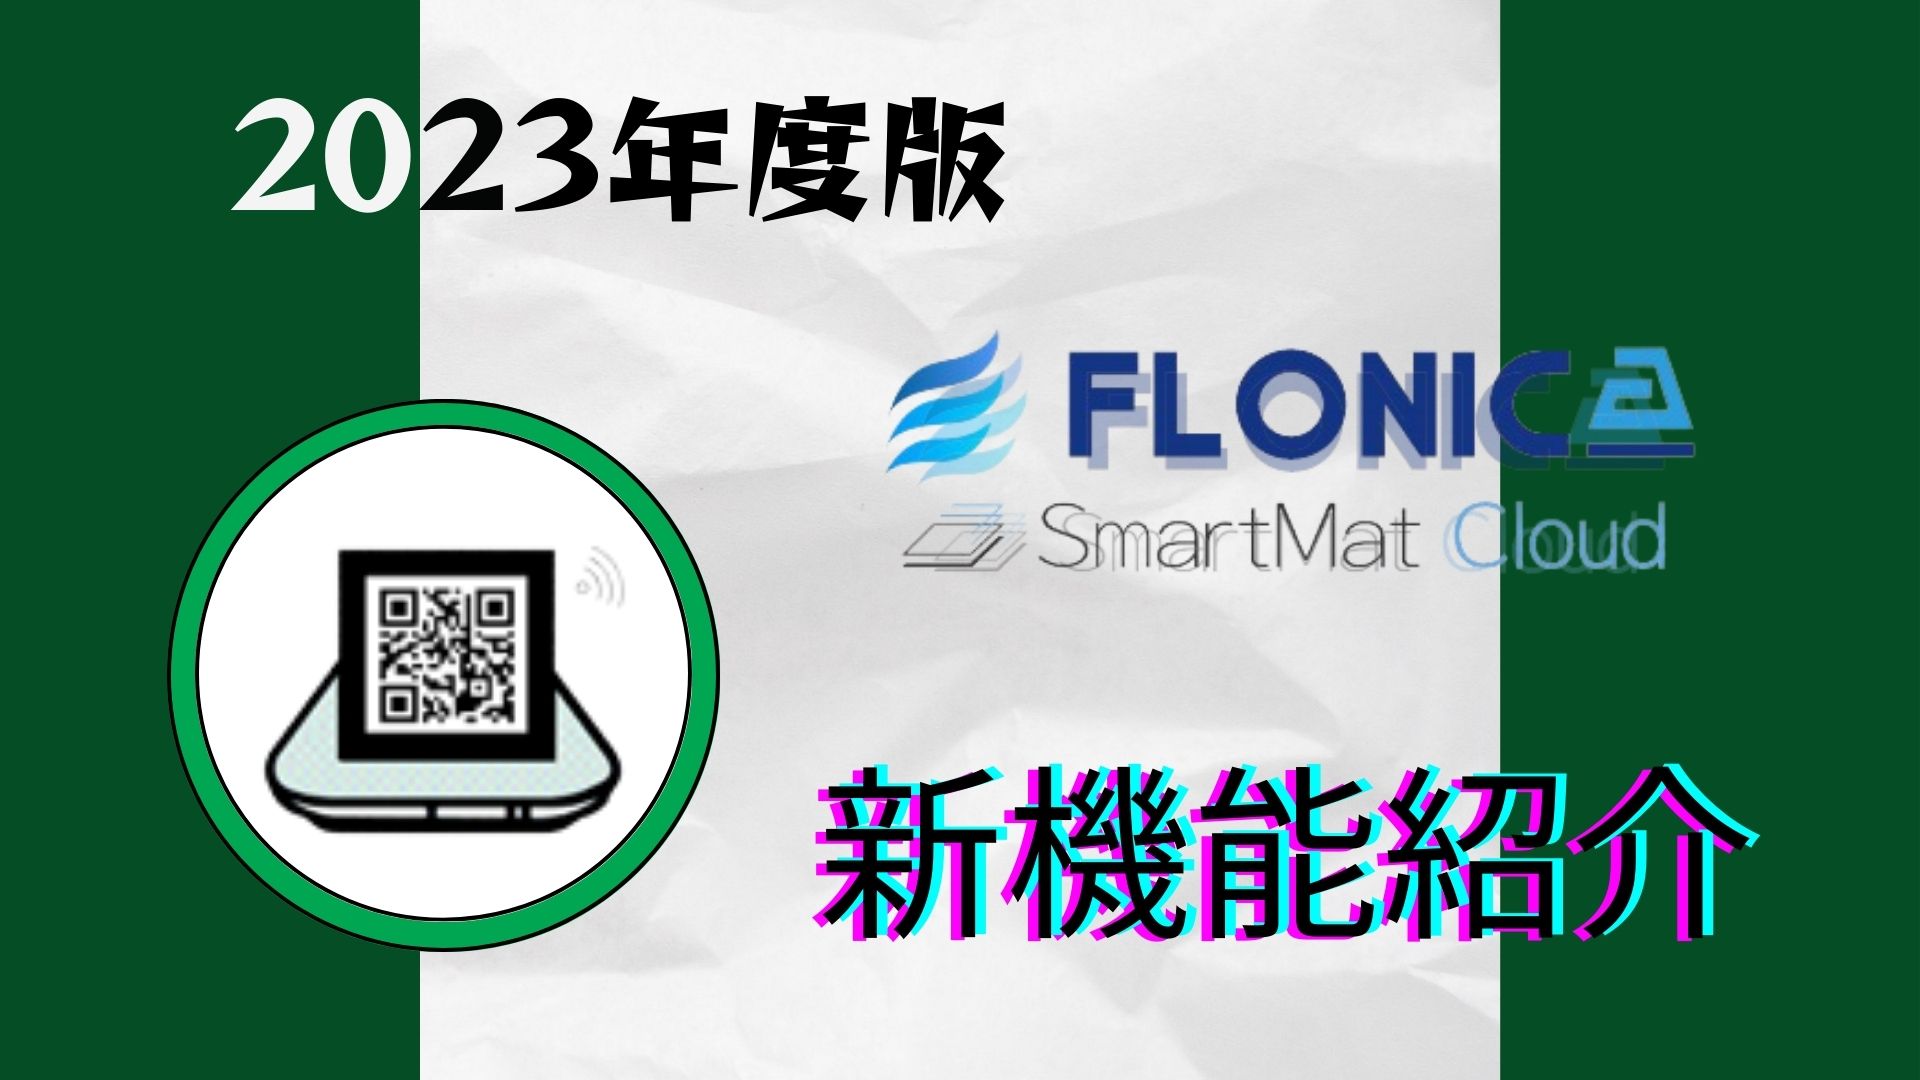 SmartmatCloud（スマートマットクラウド）-2023新機能紹介②-